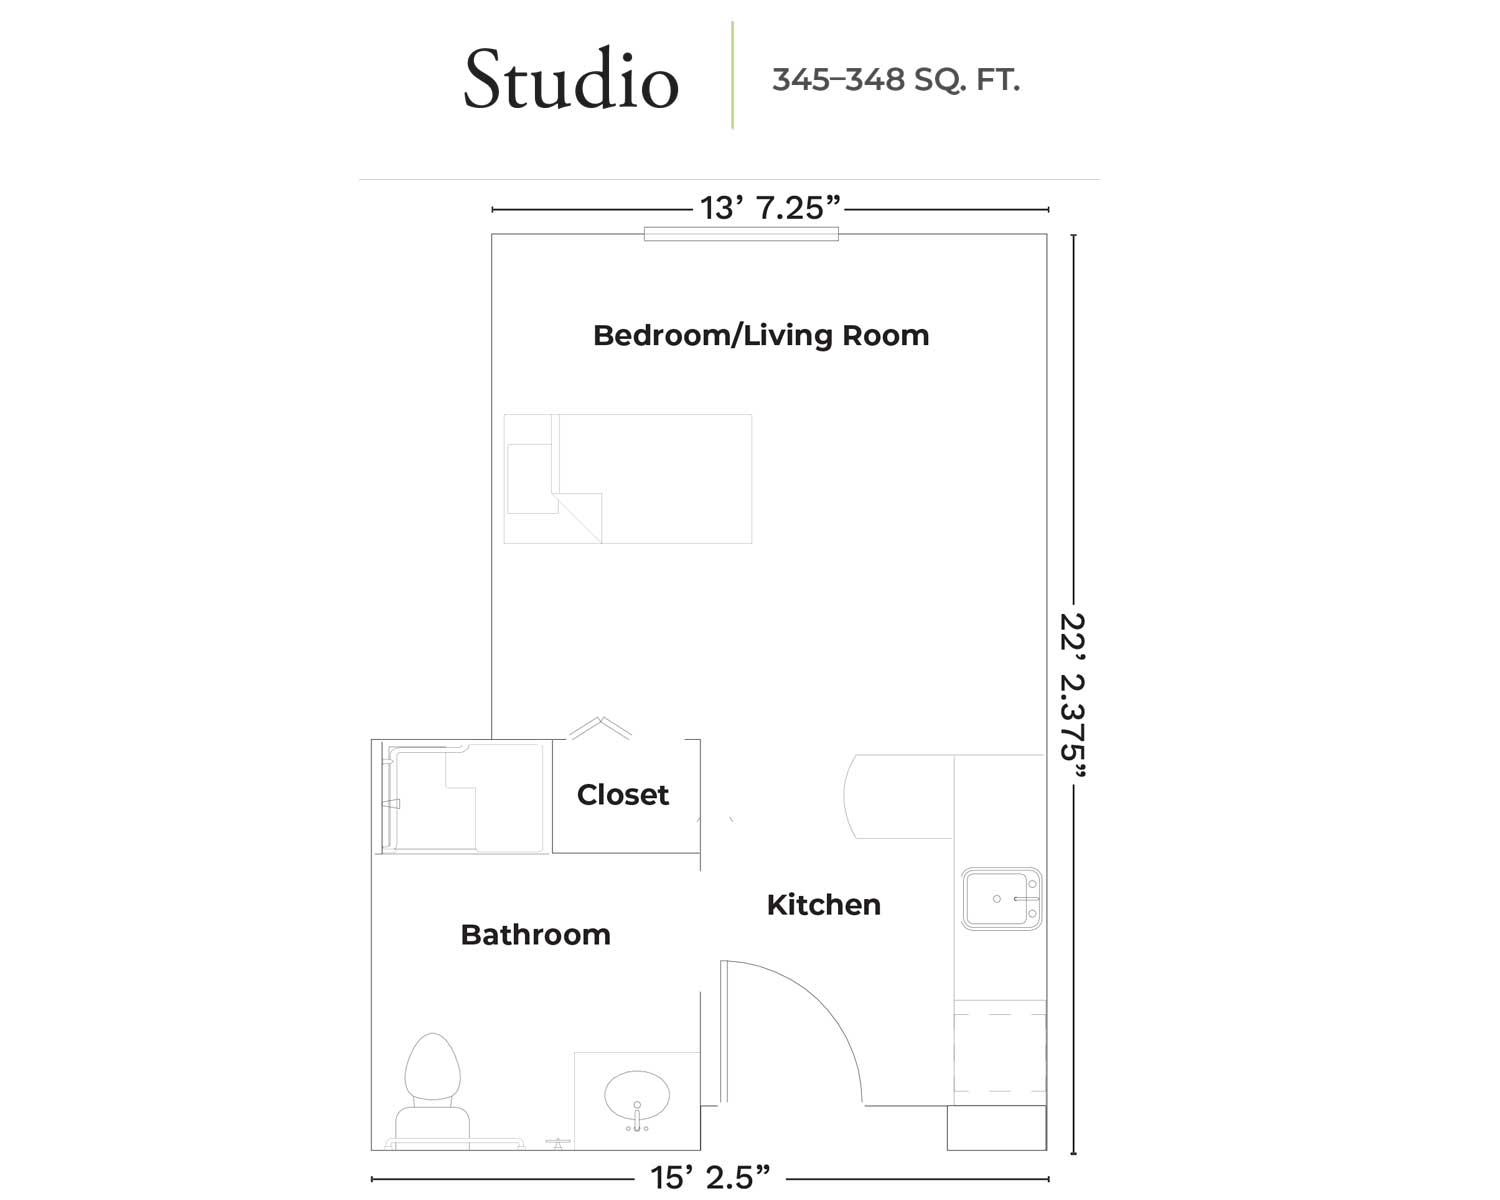 Studio unit floor plan with kitchen, bathroom, closet, and combined bedroom/living room.